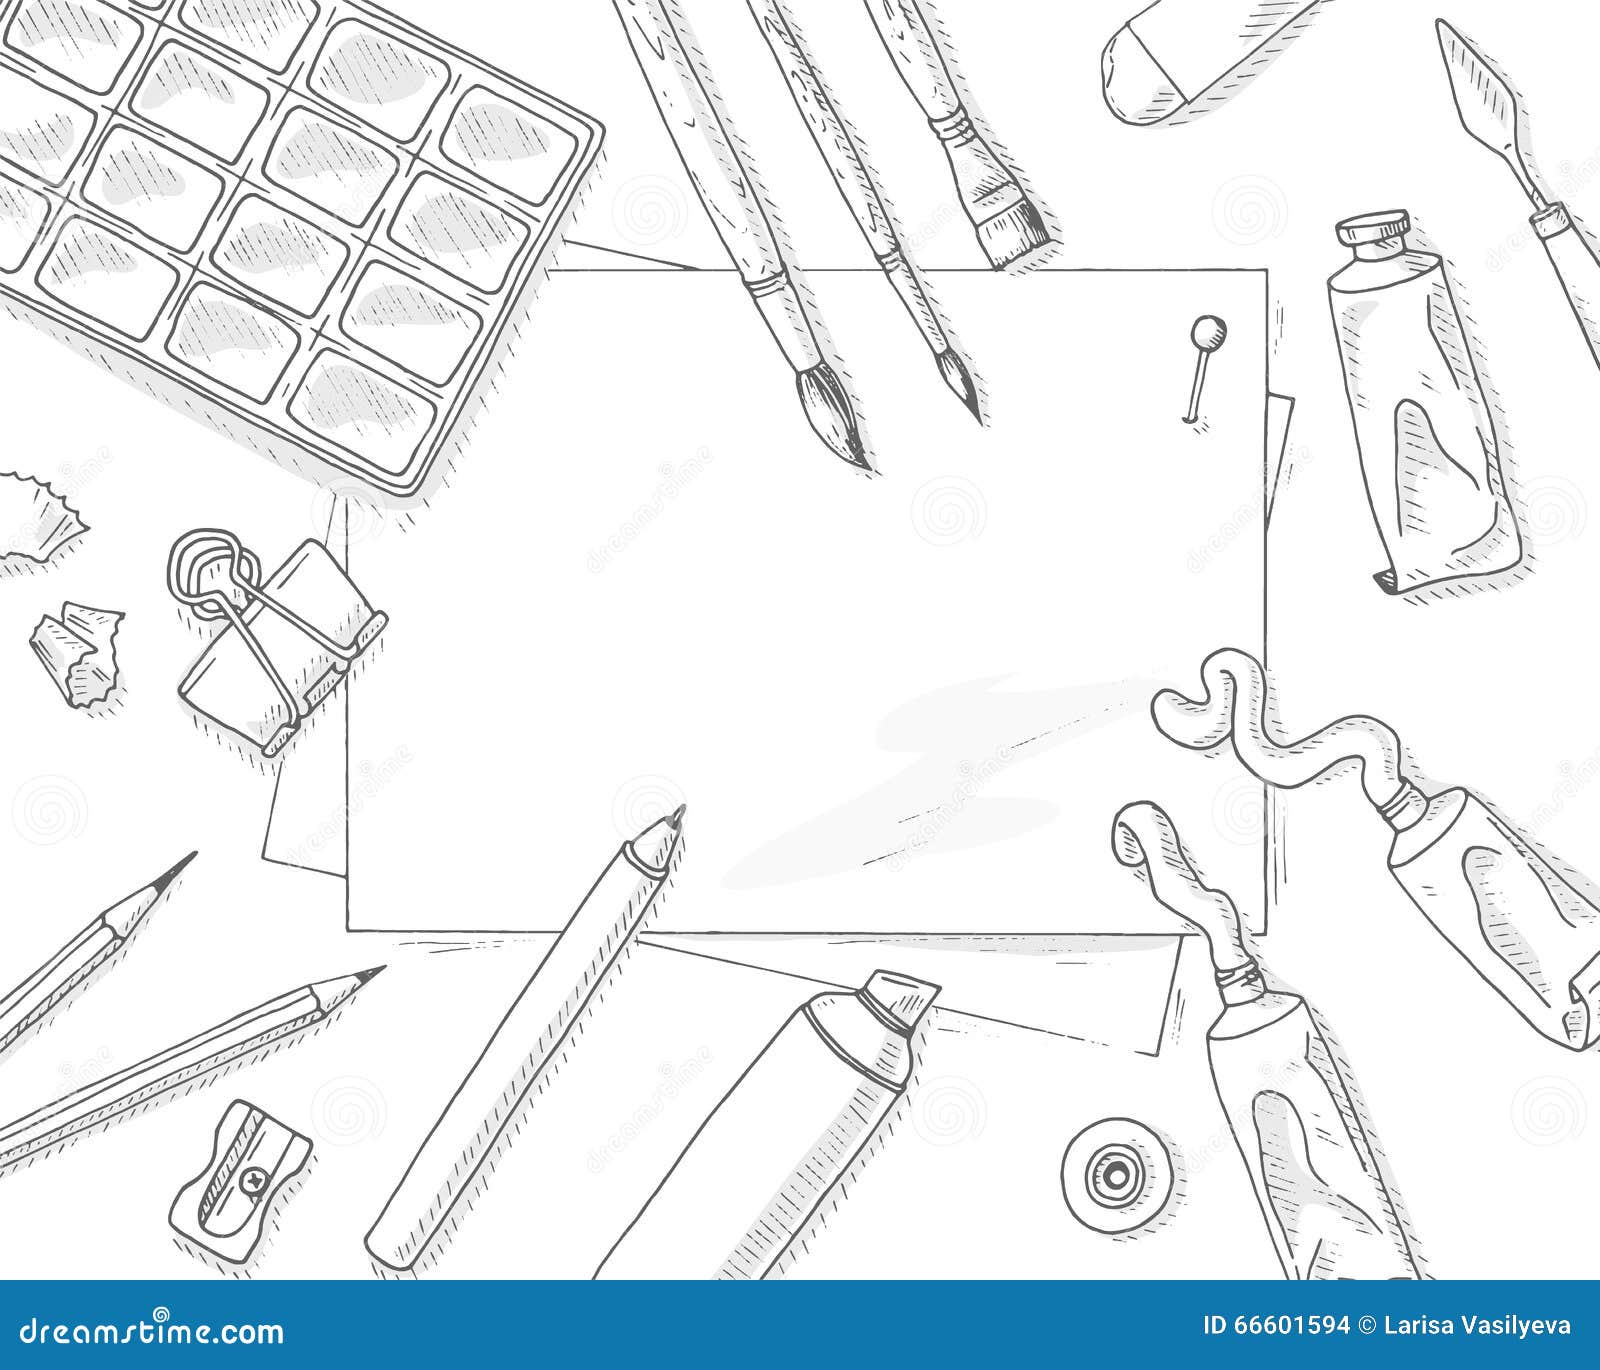 Sketchbook Mock-Up / Artist's Edition by Mockup Cloud #design #sketch  #croquis #dessin #draw | Sketch book, Sketch markers, Design sketch